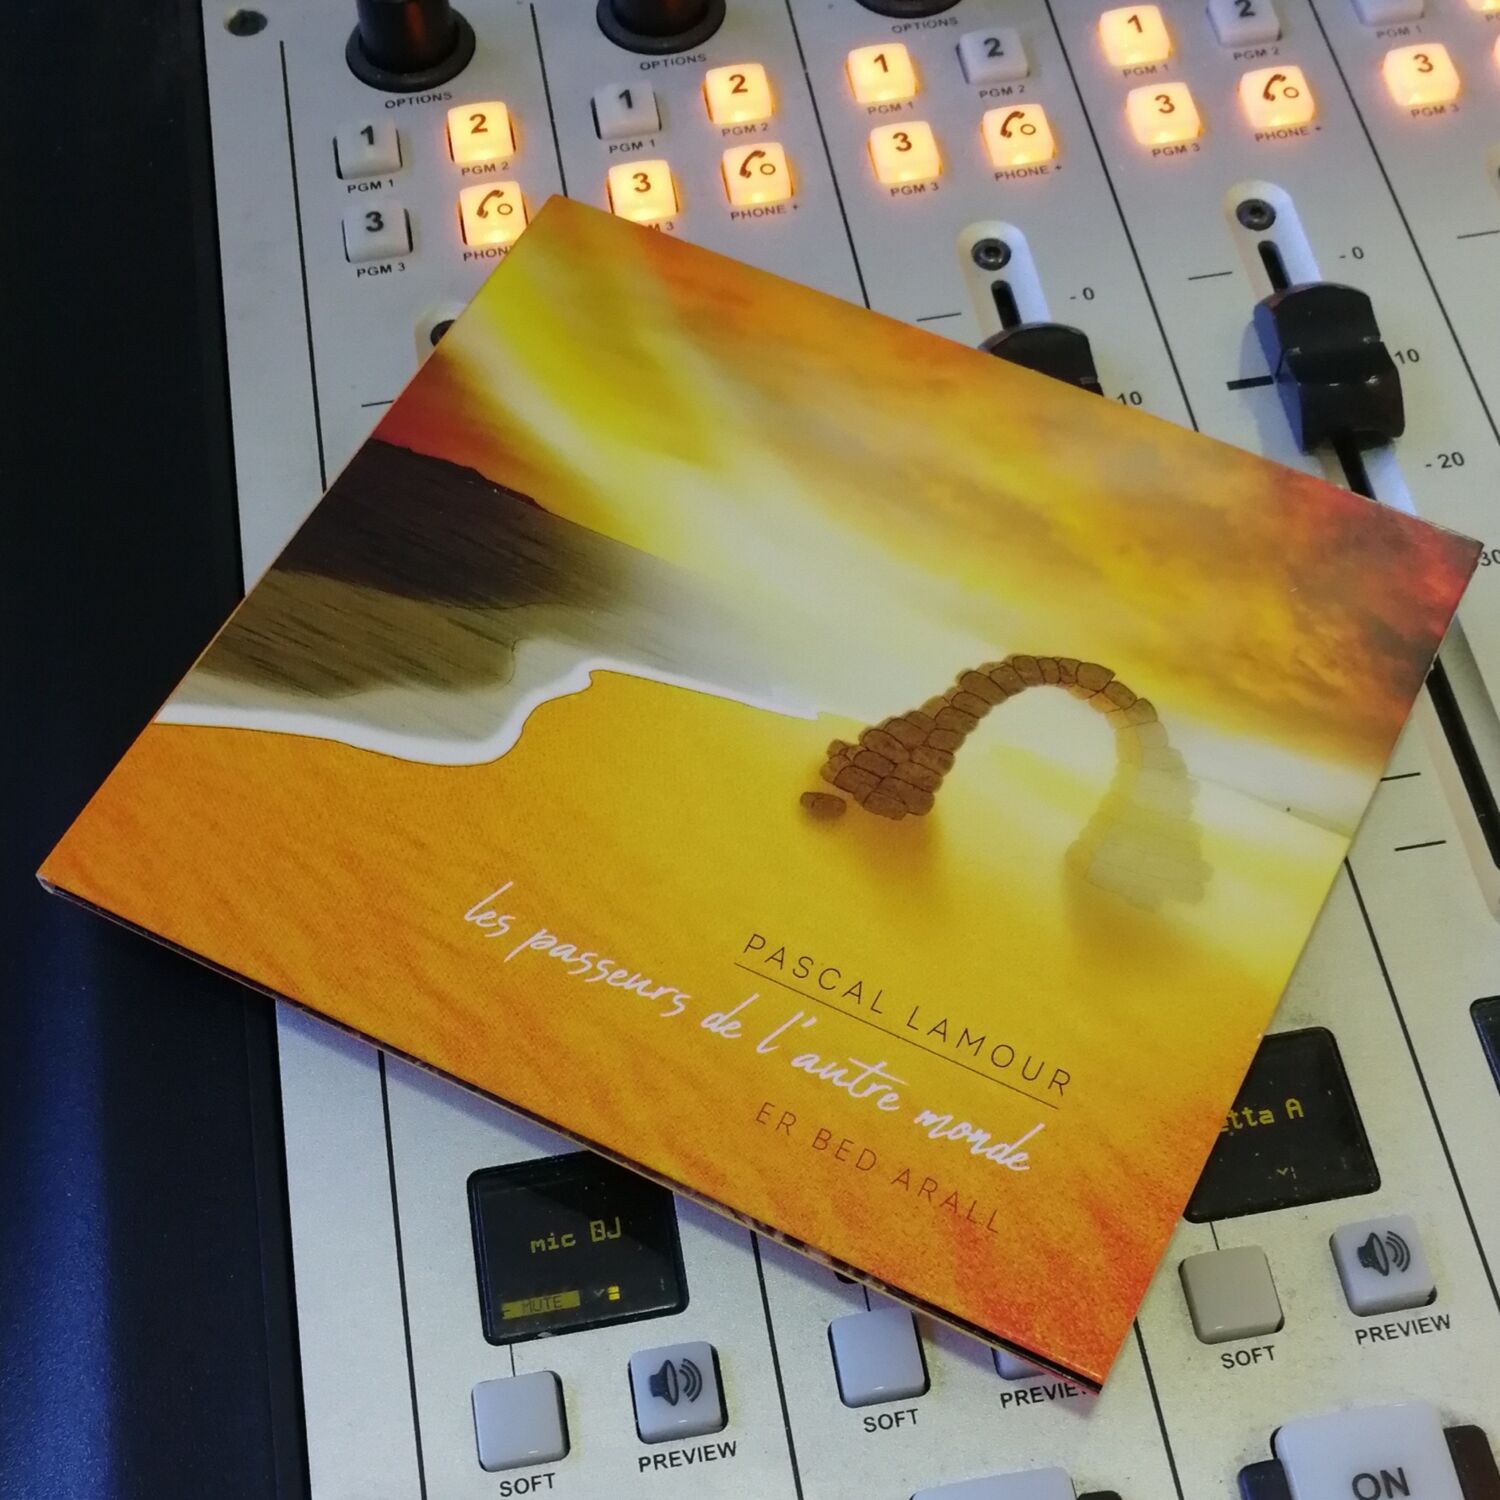 Les passeurs de l'autre monde - nouvel album de Pascal Lamour